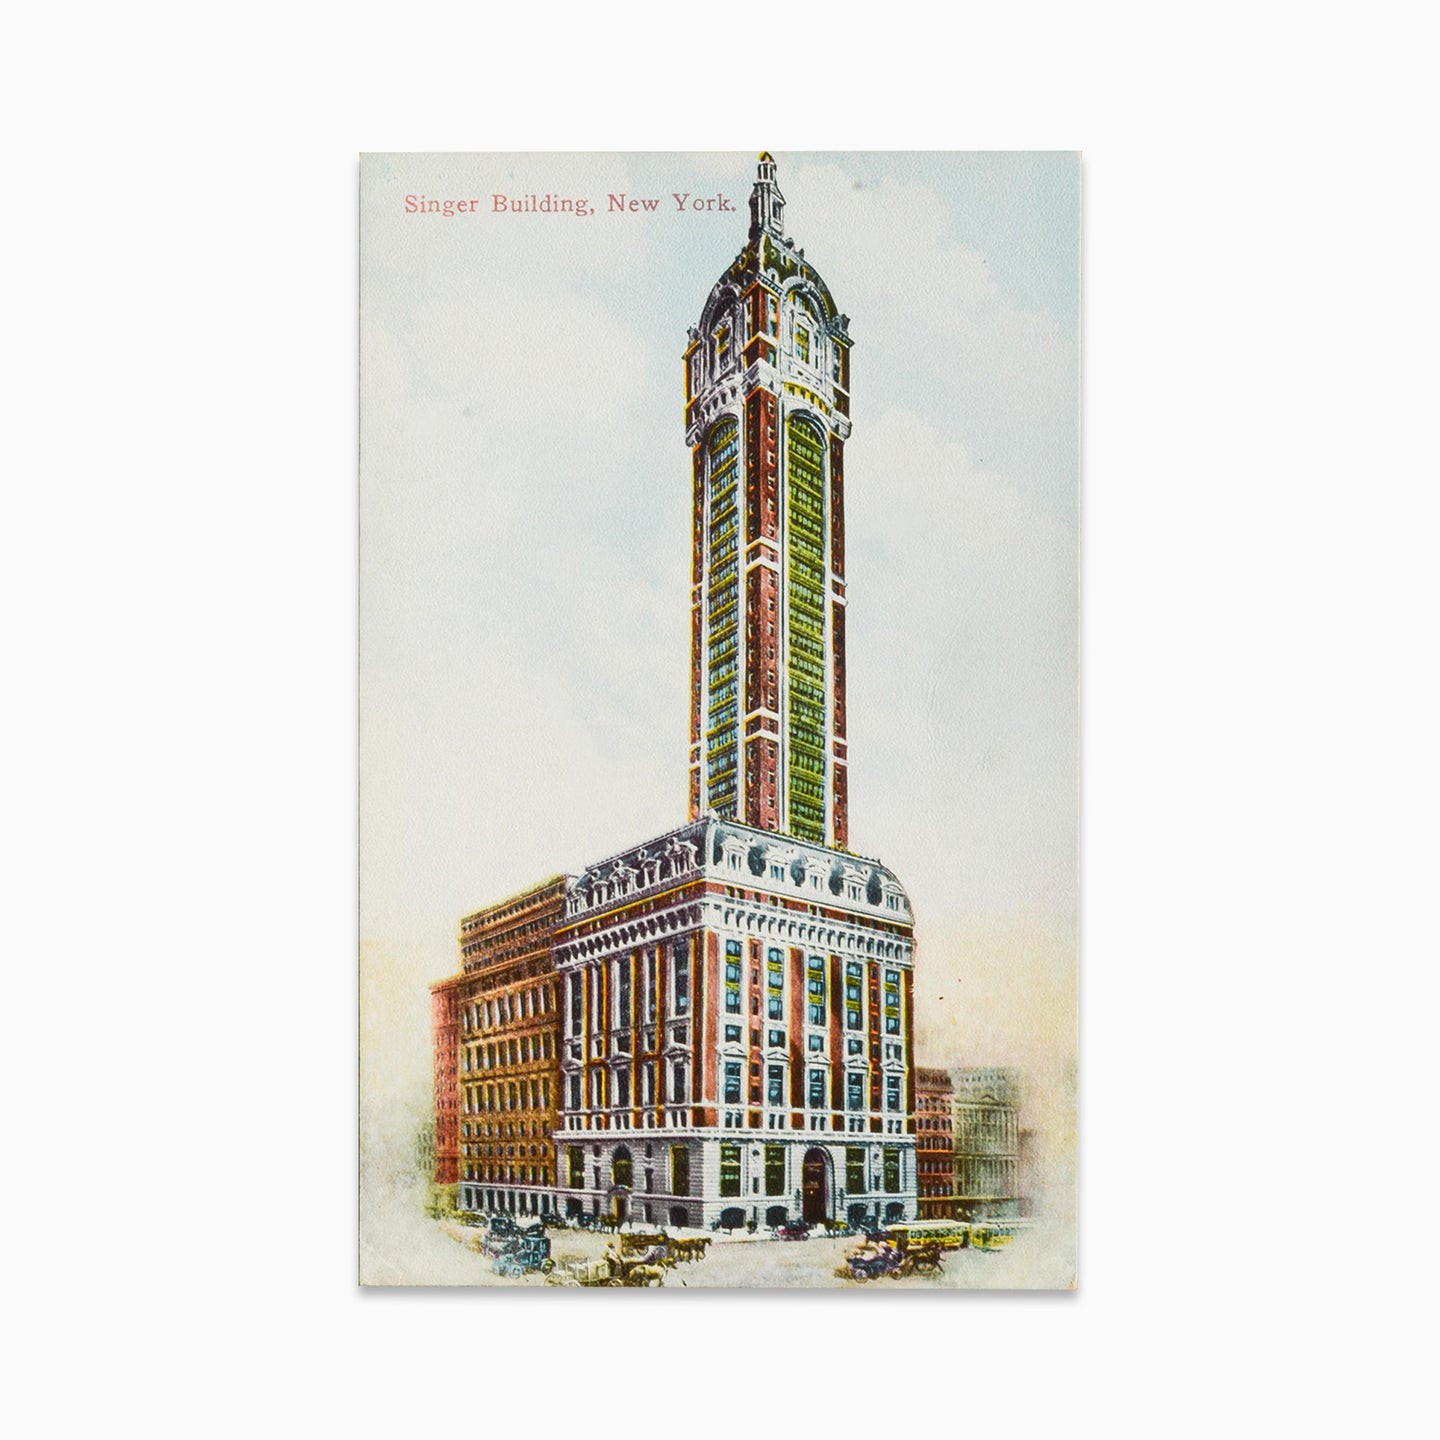 Vintage Post Card - Singer Building, New York